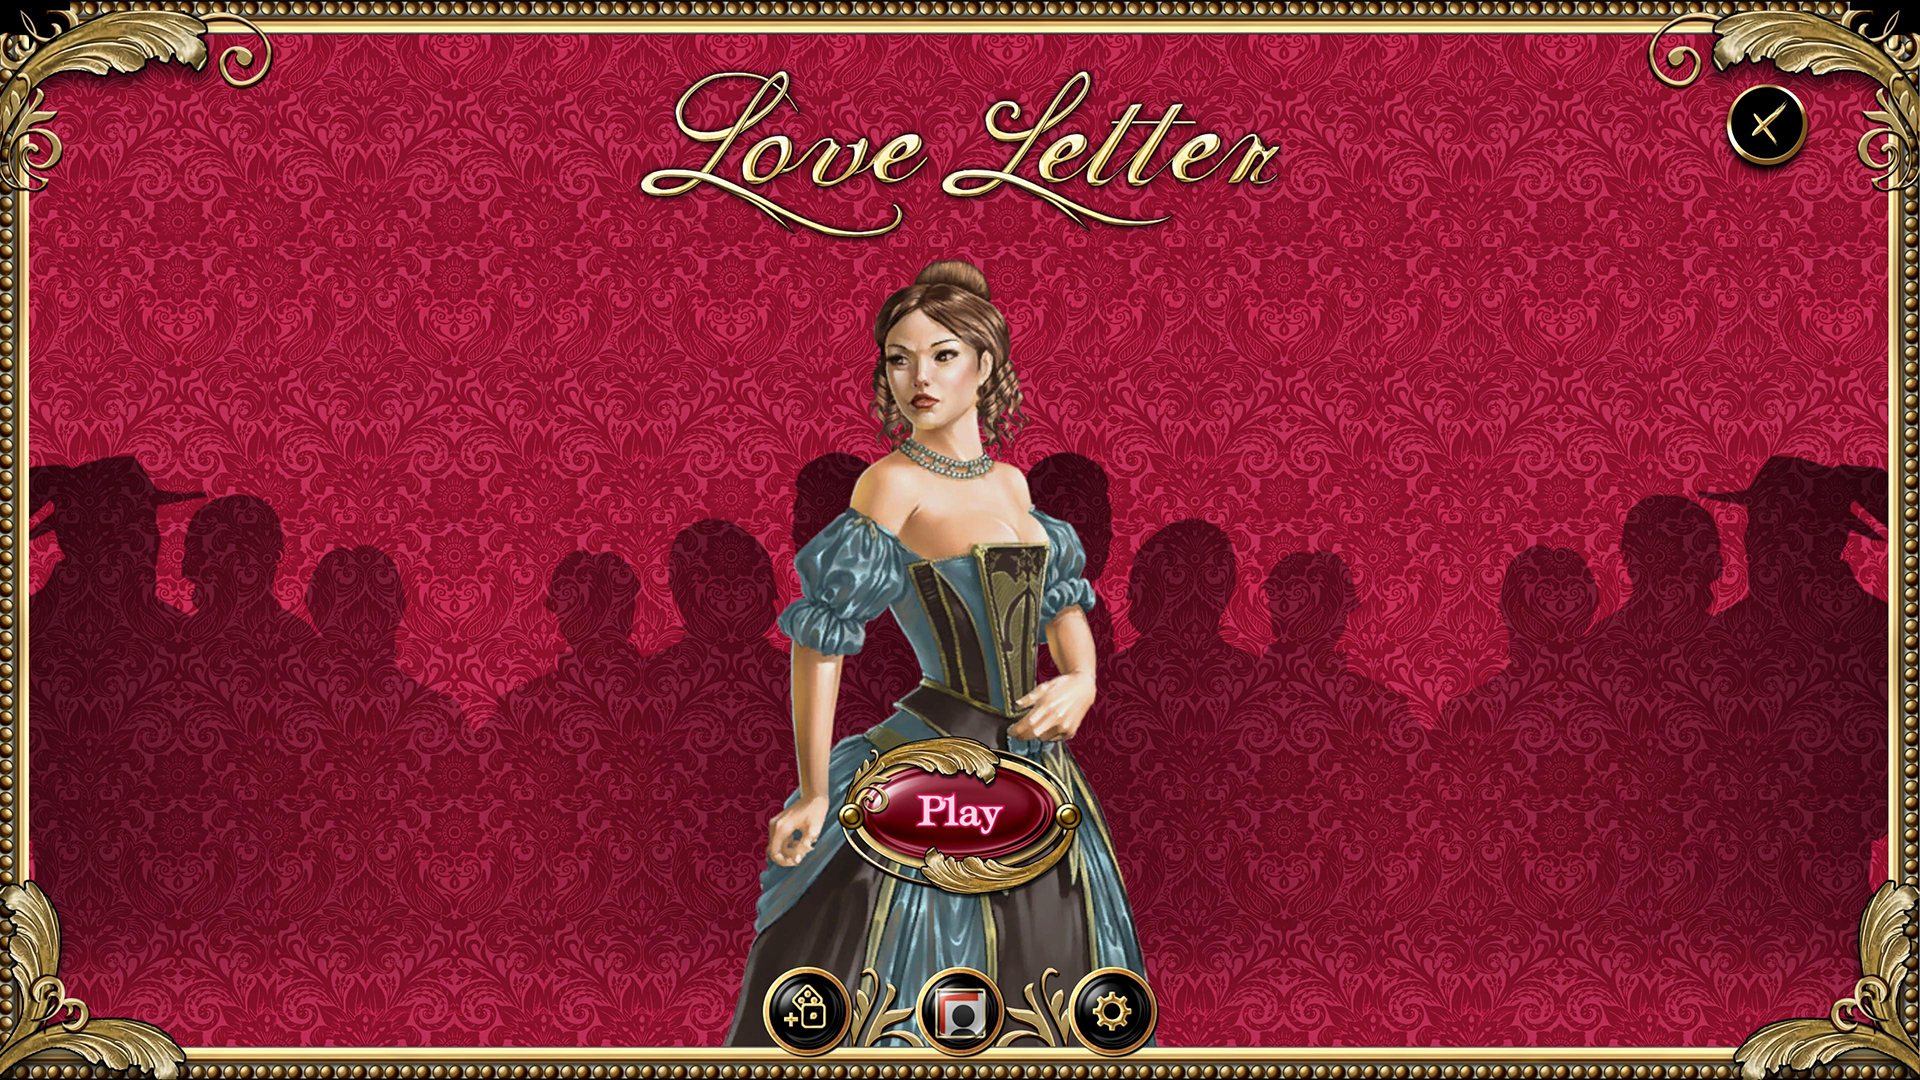 Love Letter Steam CD Key 0.26 $